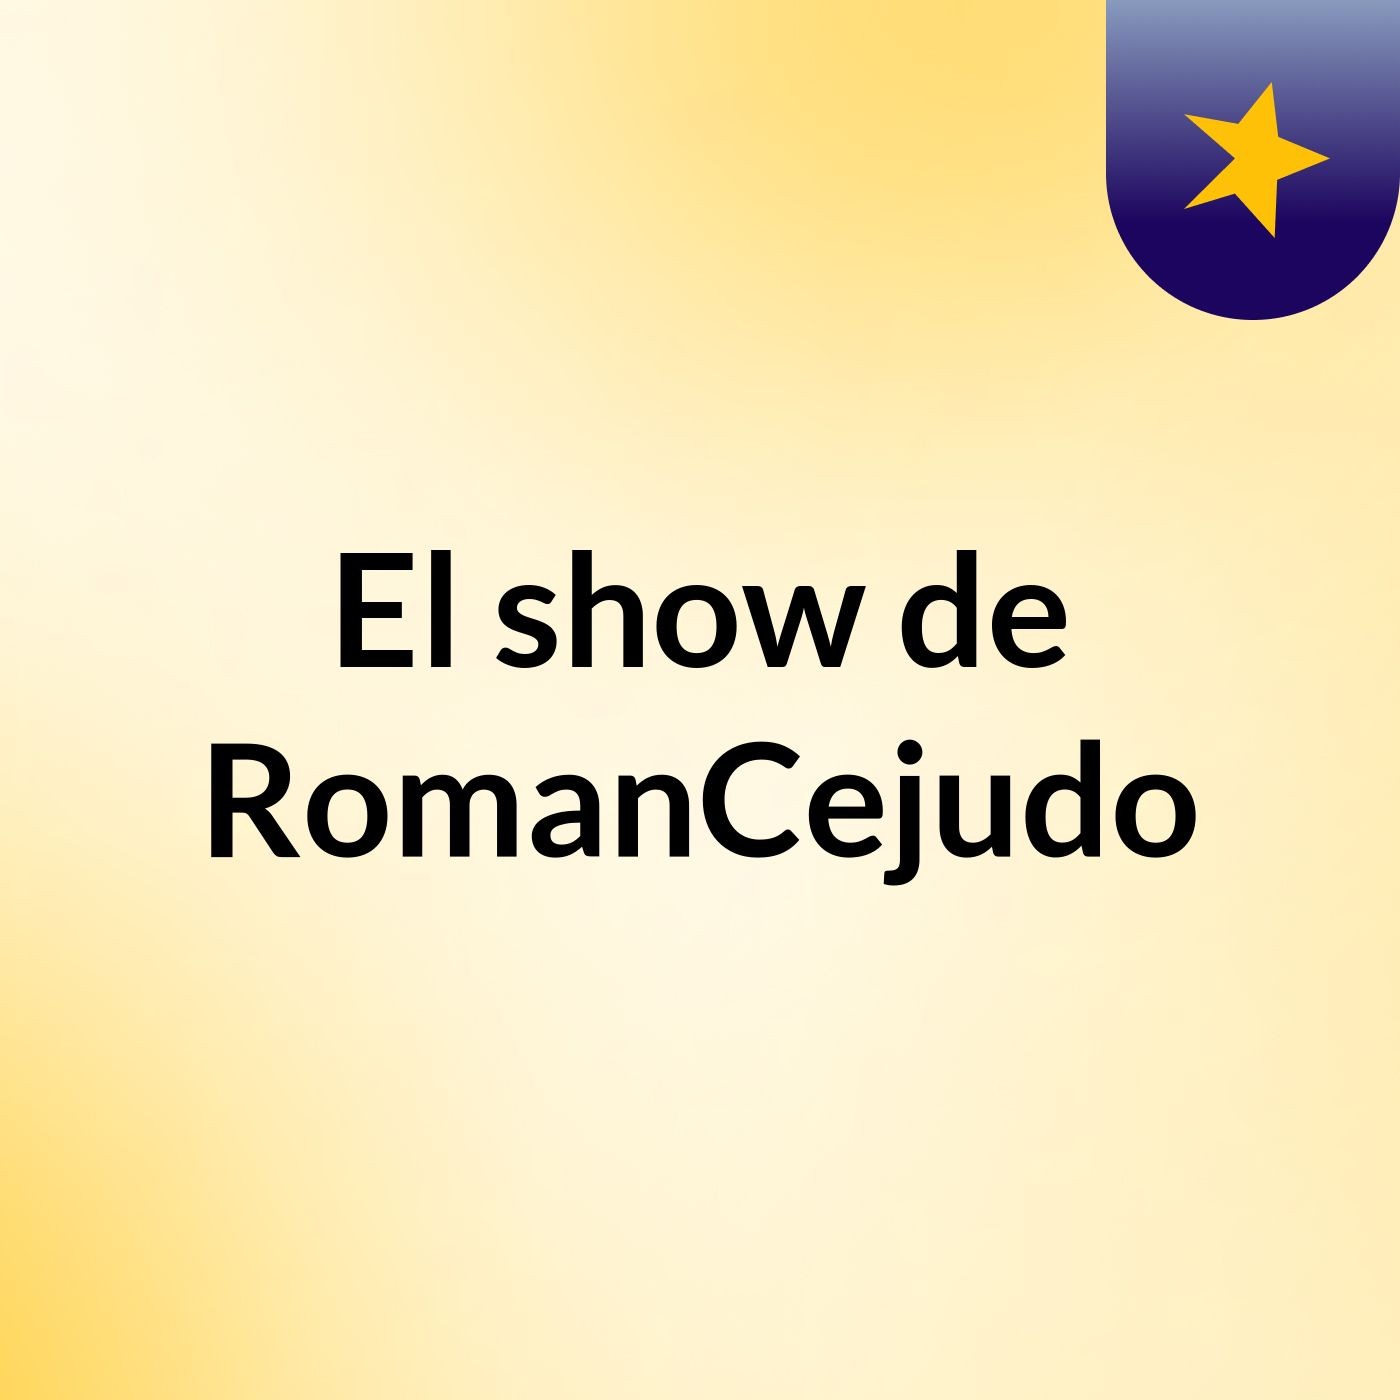 El show de RomanCejudo